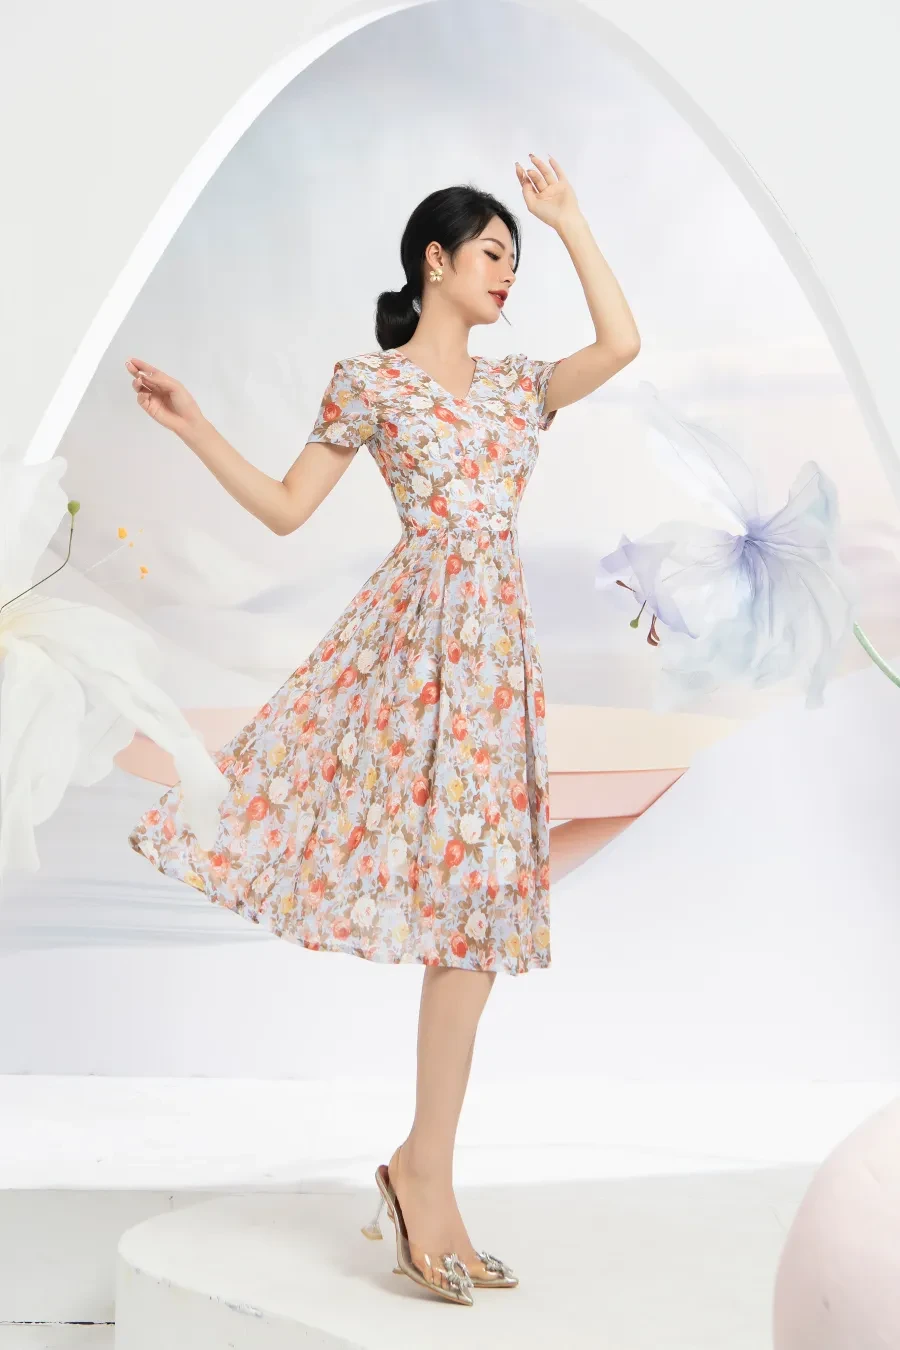 Top 10 mẫu váy đẹp họa tiết hoa nhí cho mùa hè 2023  Xưởng May Apis  Công  ty may gia công hàng đầu tại Hồ Chí Minh